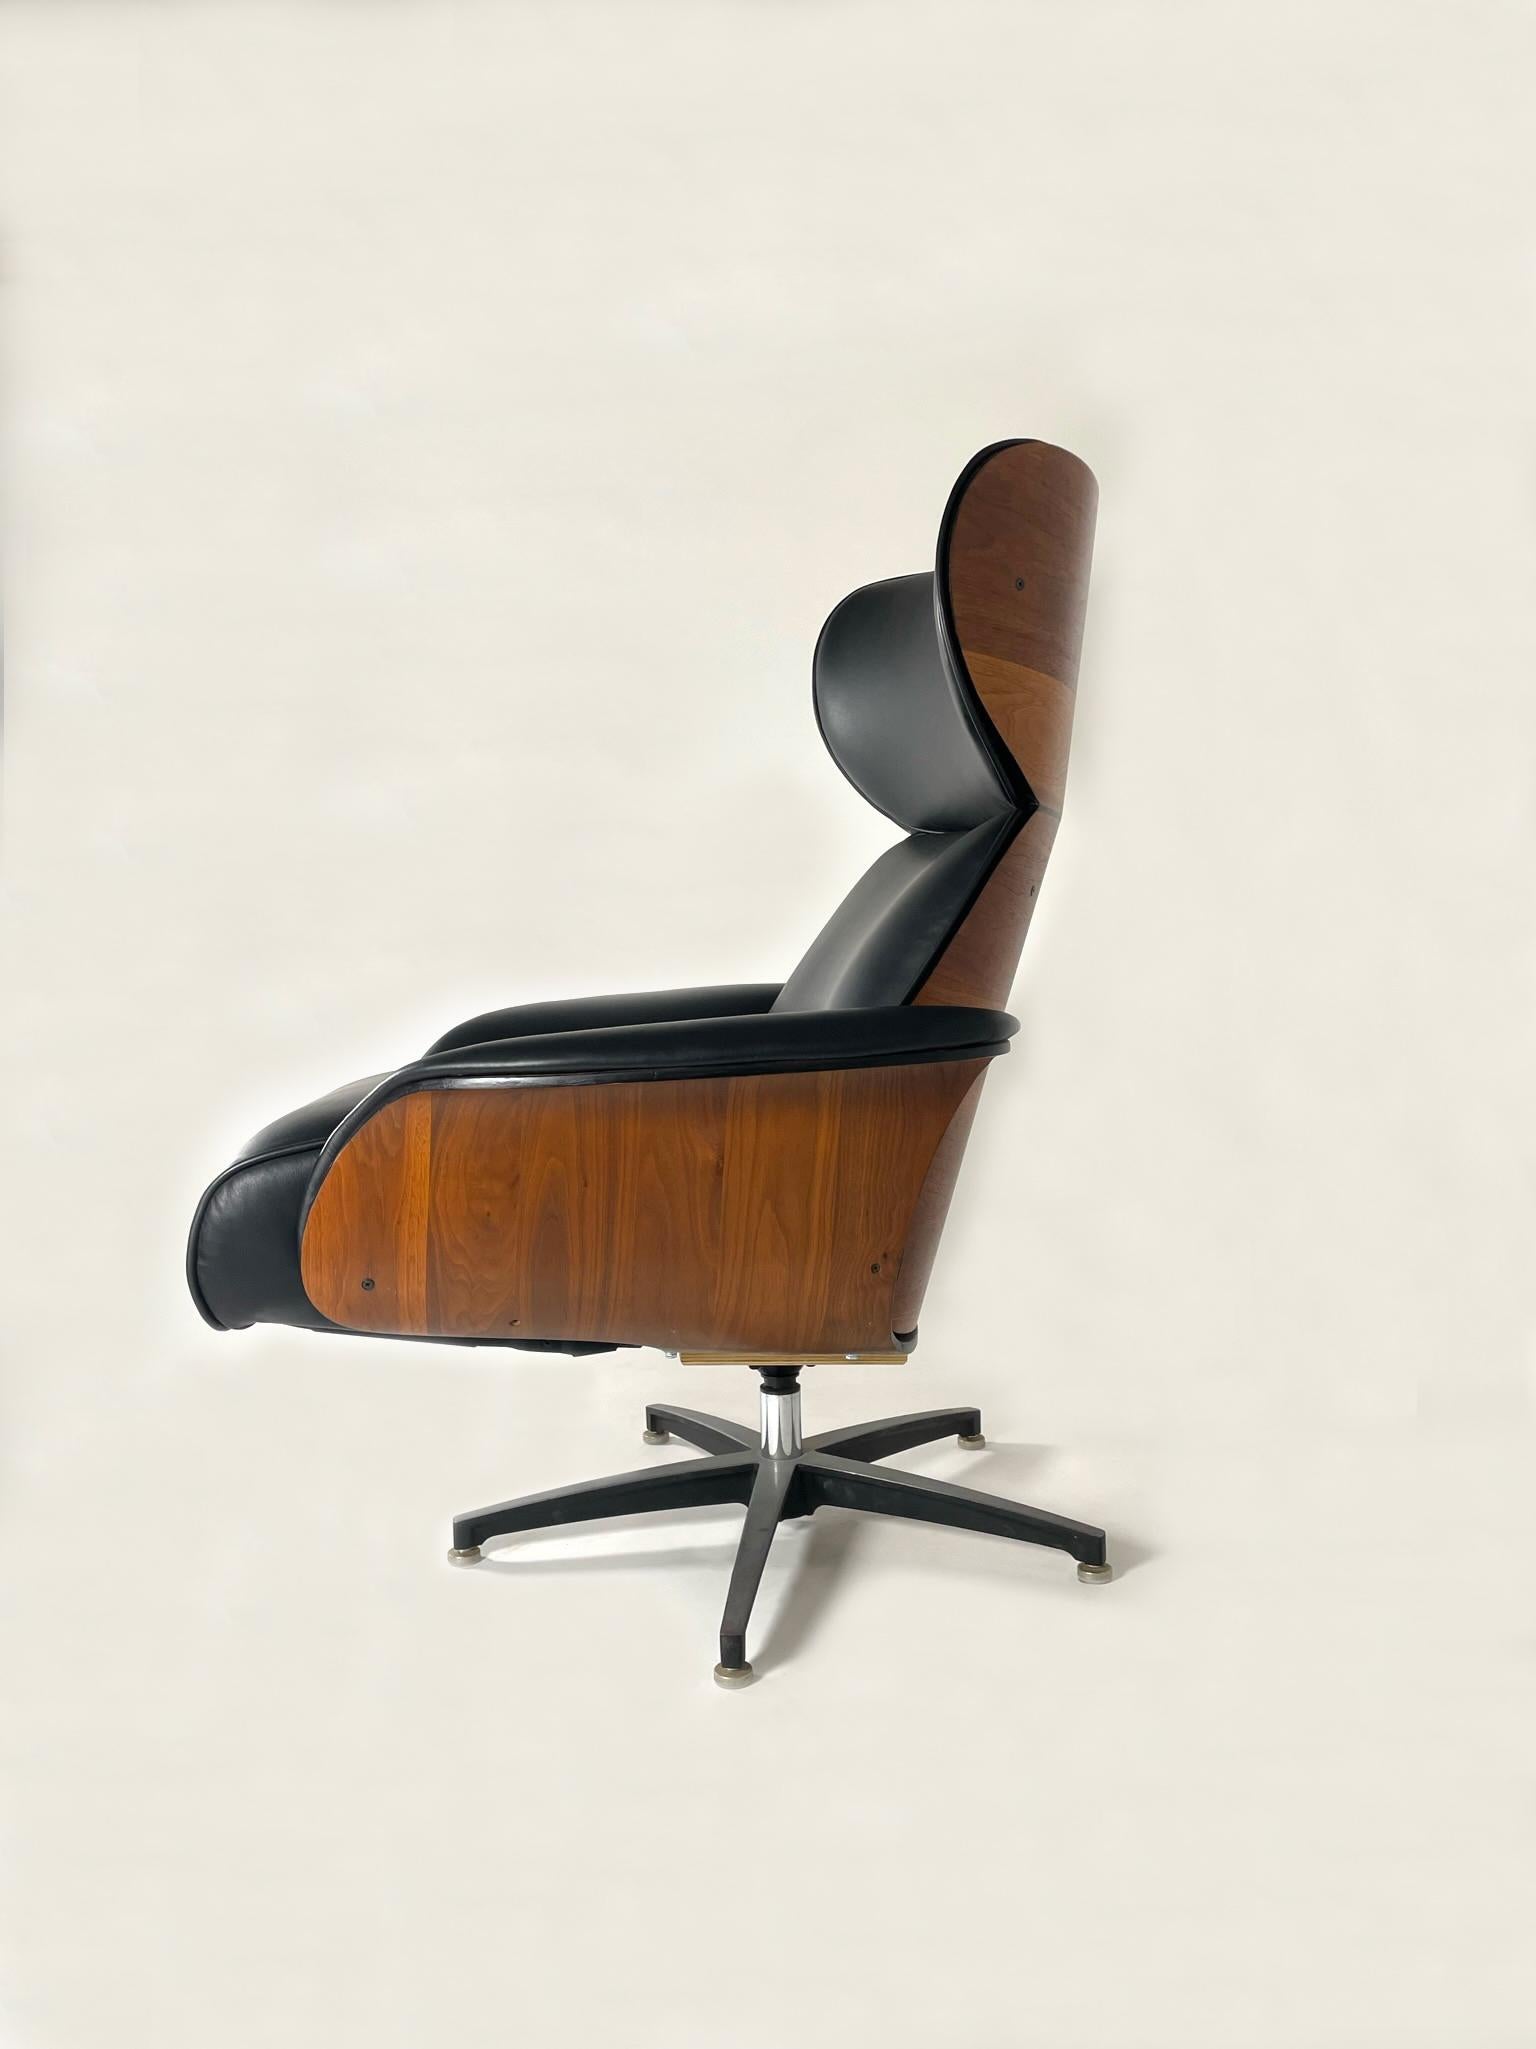 Il s'agit d'un fauteuil inclinable Mr. Chair, rarement vu, avec ottoman intégré. Nouvellement retapissé en cuir italien noir neuf. Il s'agit d'une variante très rare de la chaise Mr Chair. Elle a été conçue pour avoir une empreinte de pied plus